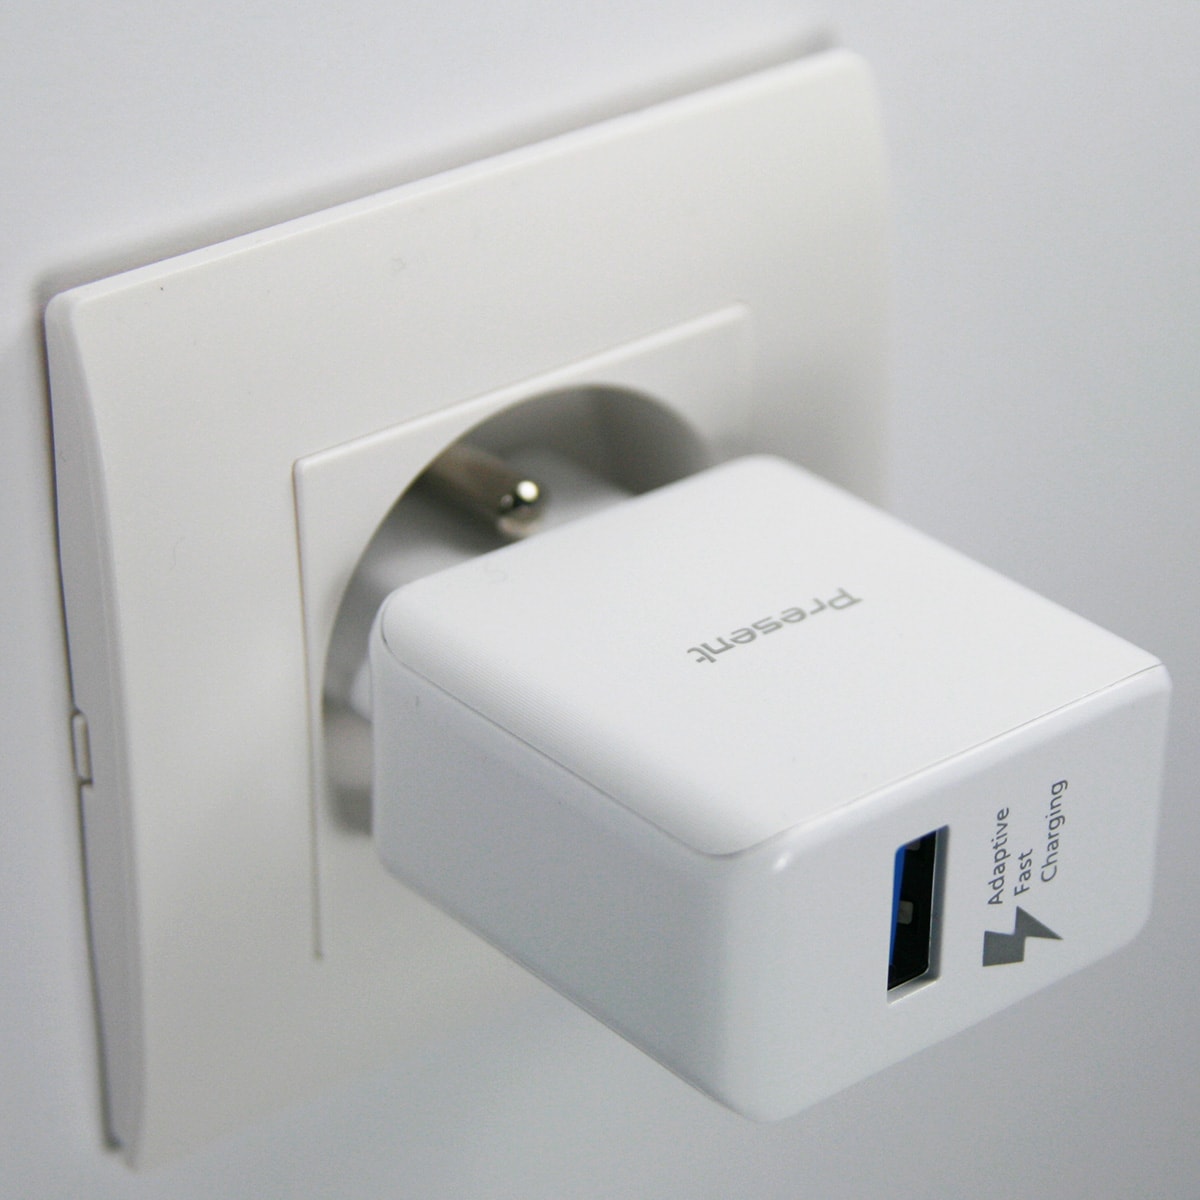 Chargeur USB secteur de 2A charge rapide pour téléphone mobile, tablettes, etc...